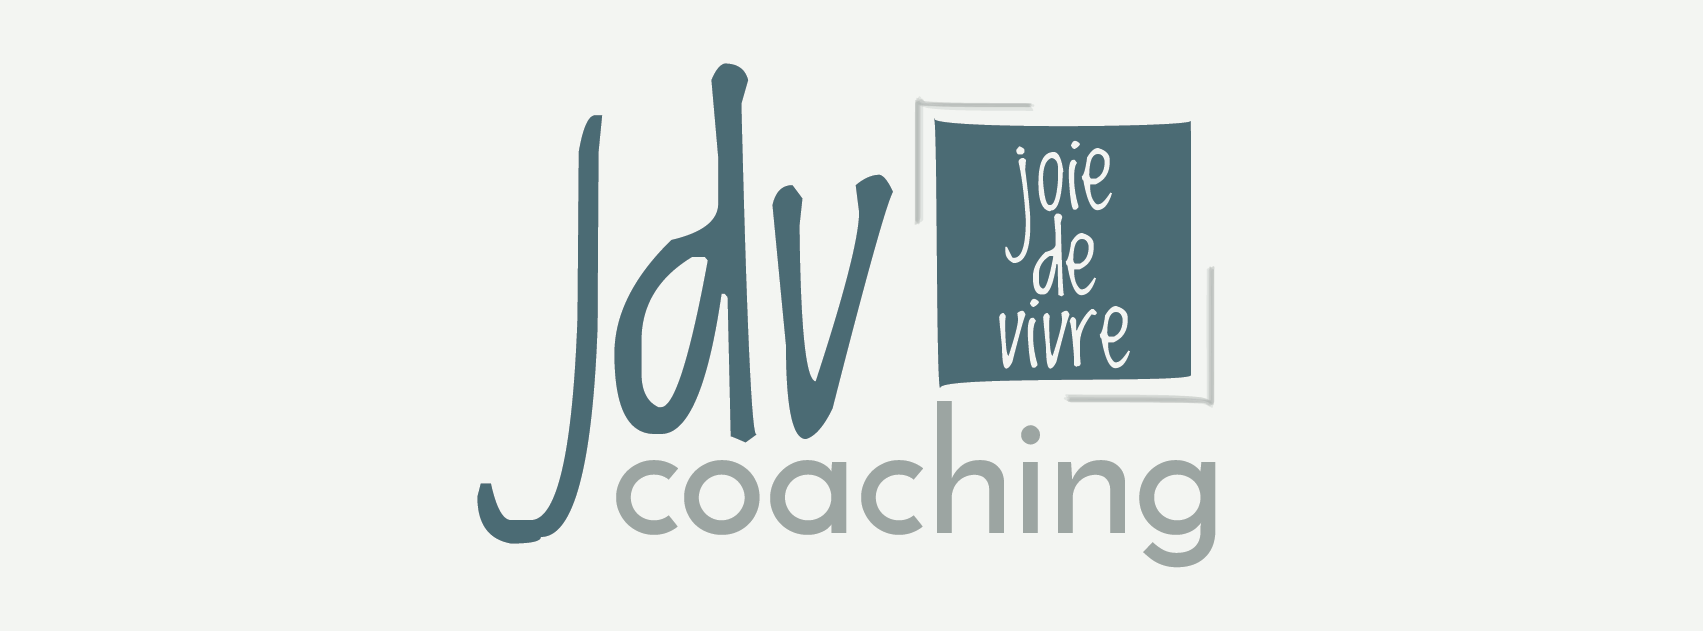 Life coaching-JDV Coaching